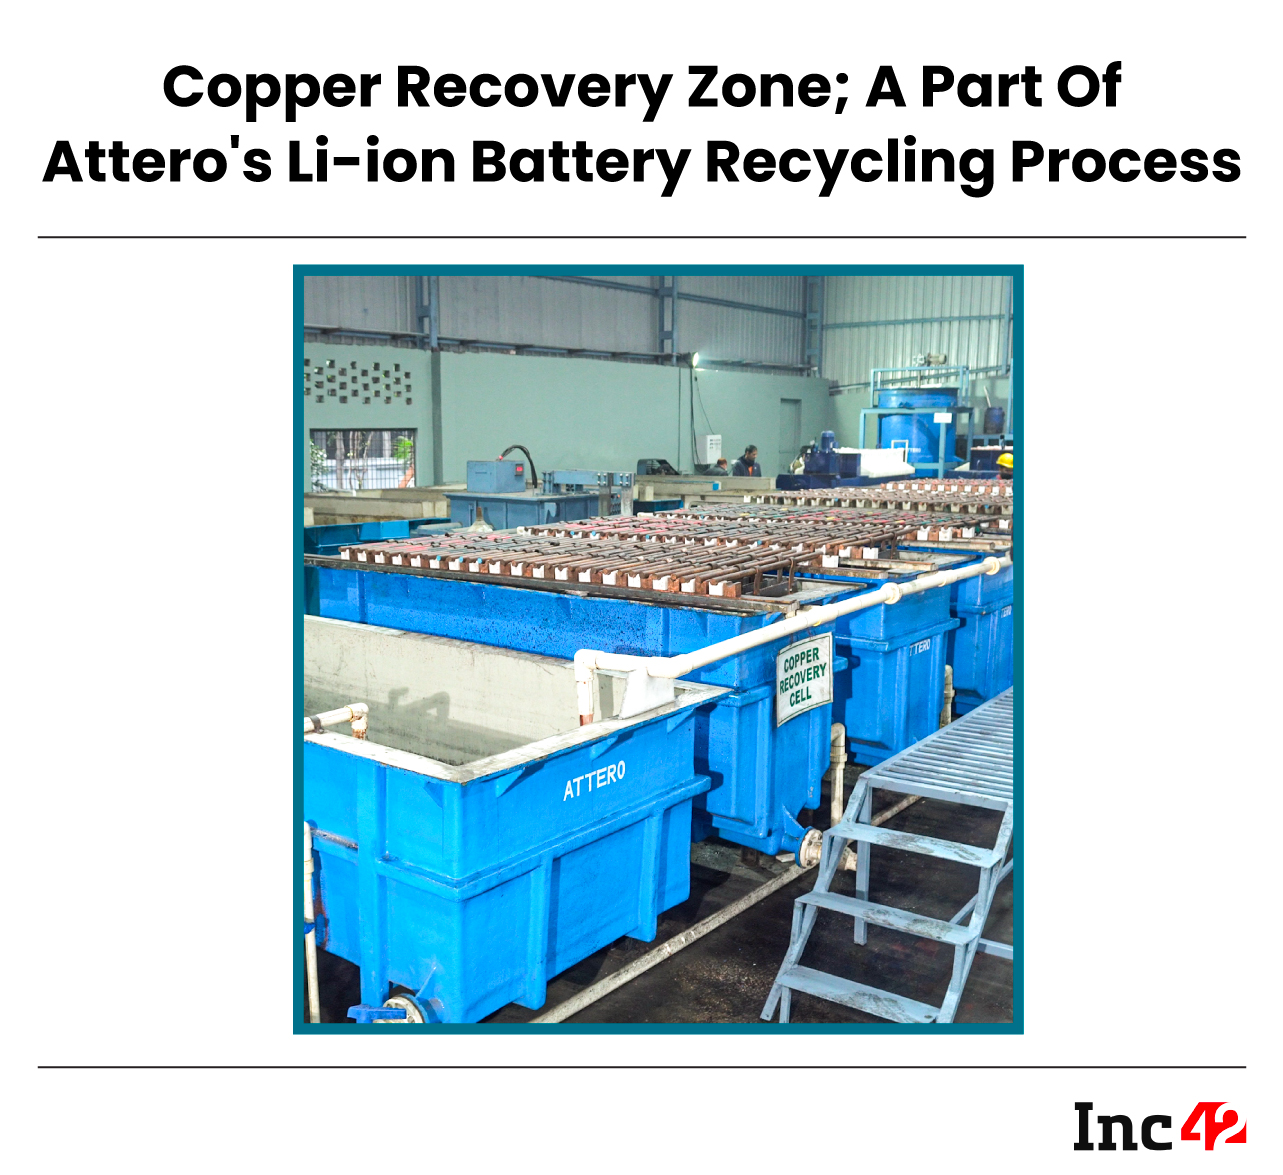 Attero's copper recovery zone